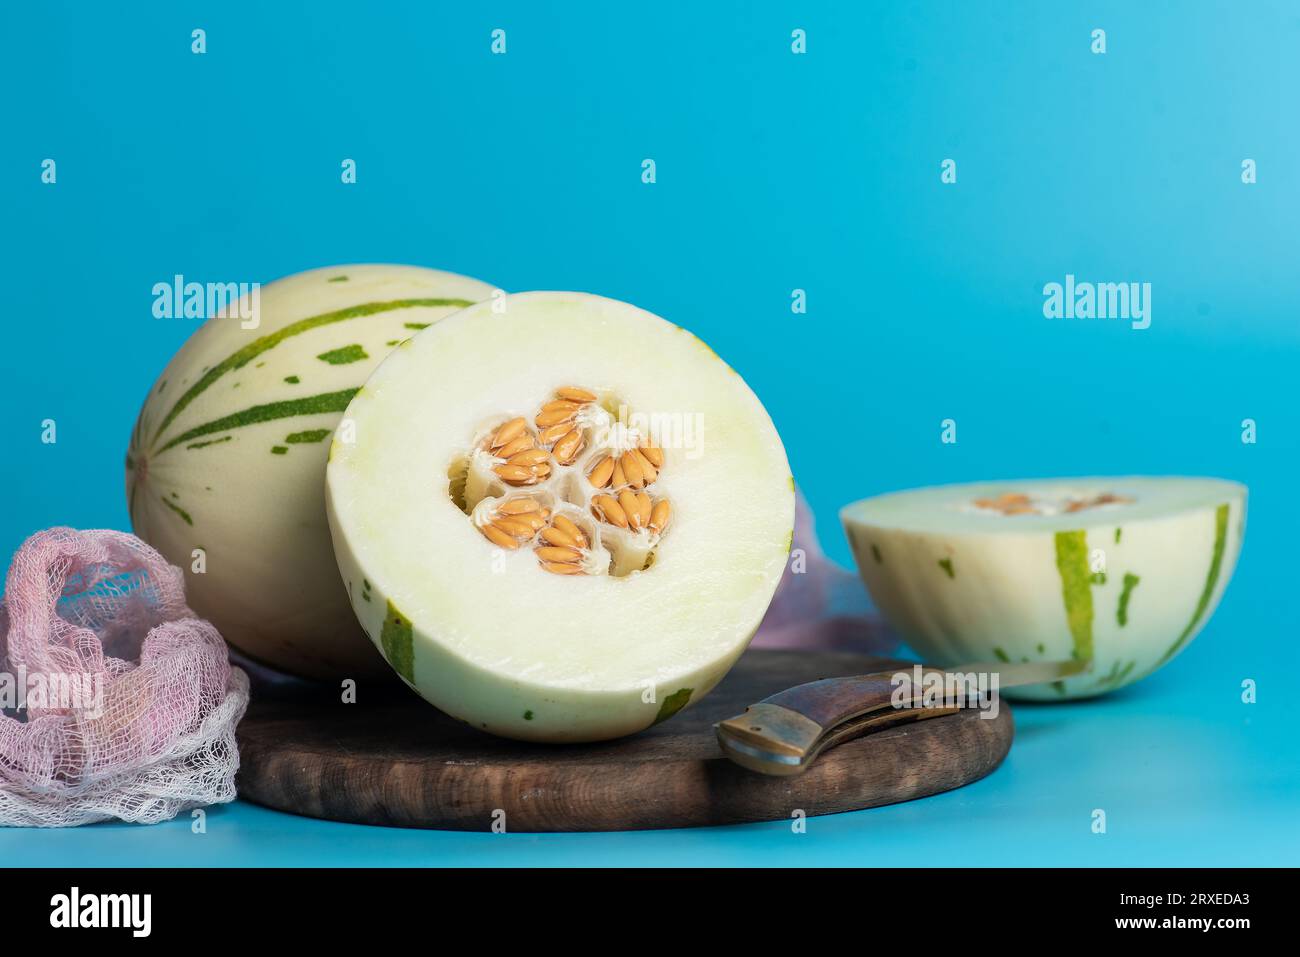 Melon gaya ivoire avec des rayures pointillées vertes et des taches sur un fond bleu. Fruits mûrs et juteux colorés, goût sucré avec des notes florales. Tout un an Banque D'Images